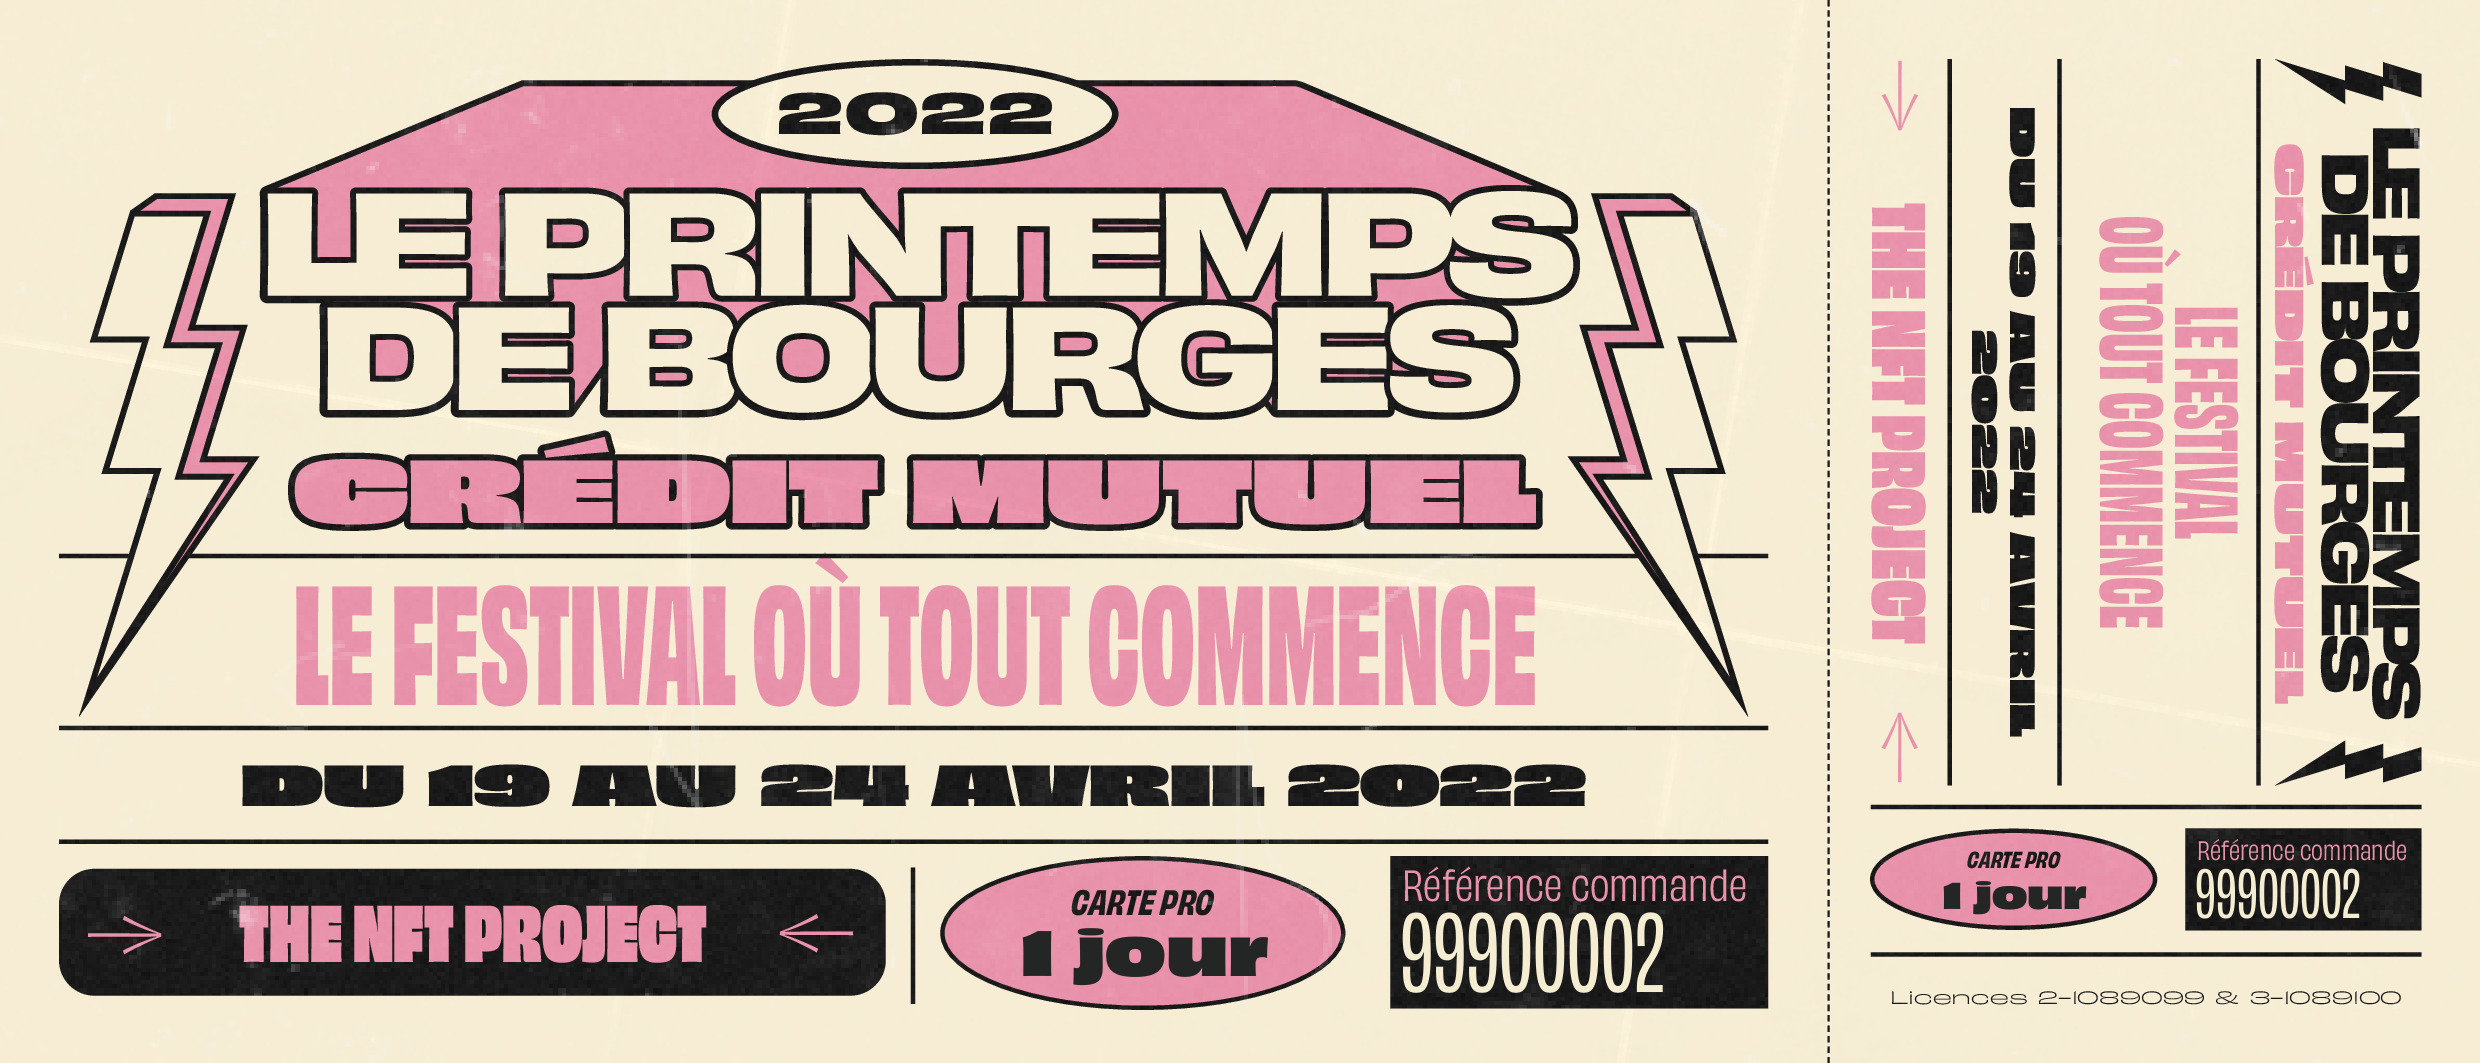 Une billetterie NFT pour le Printemps de Bourges